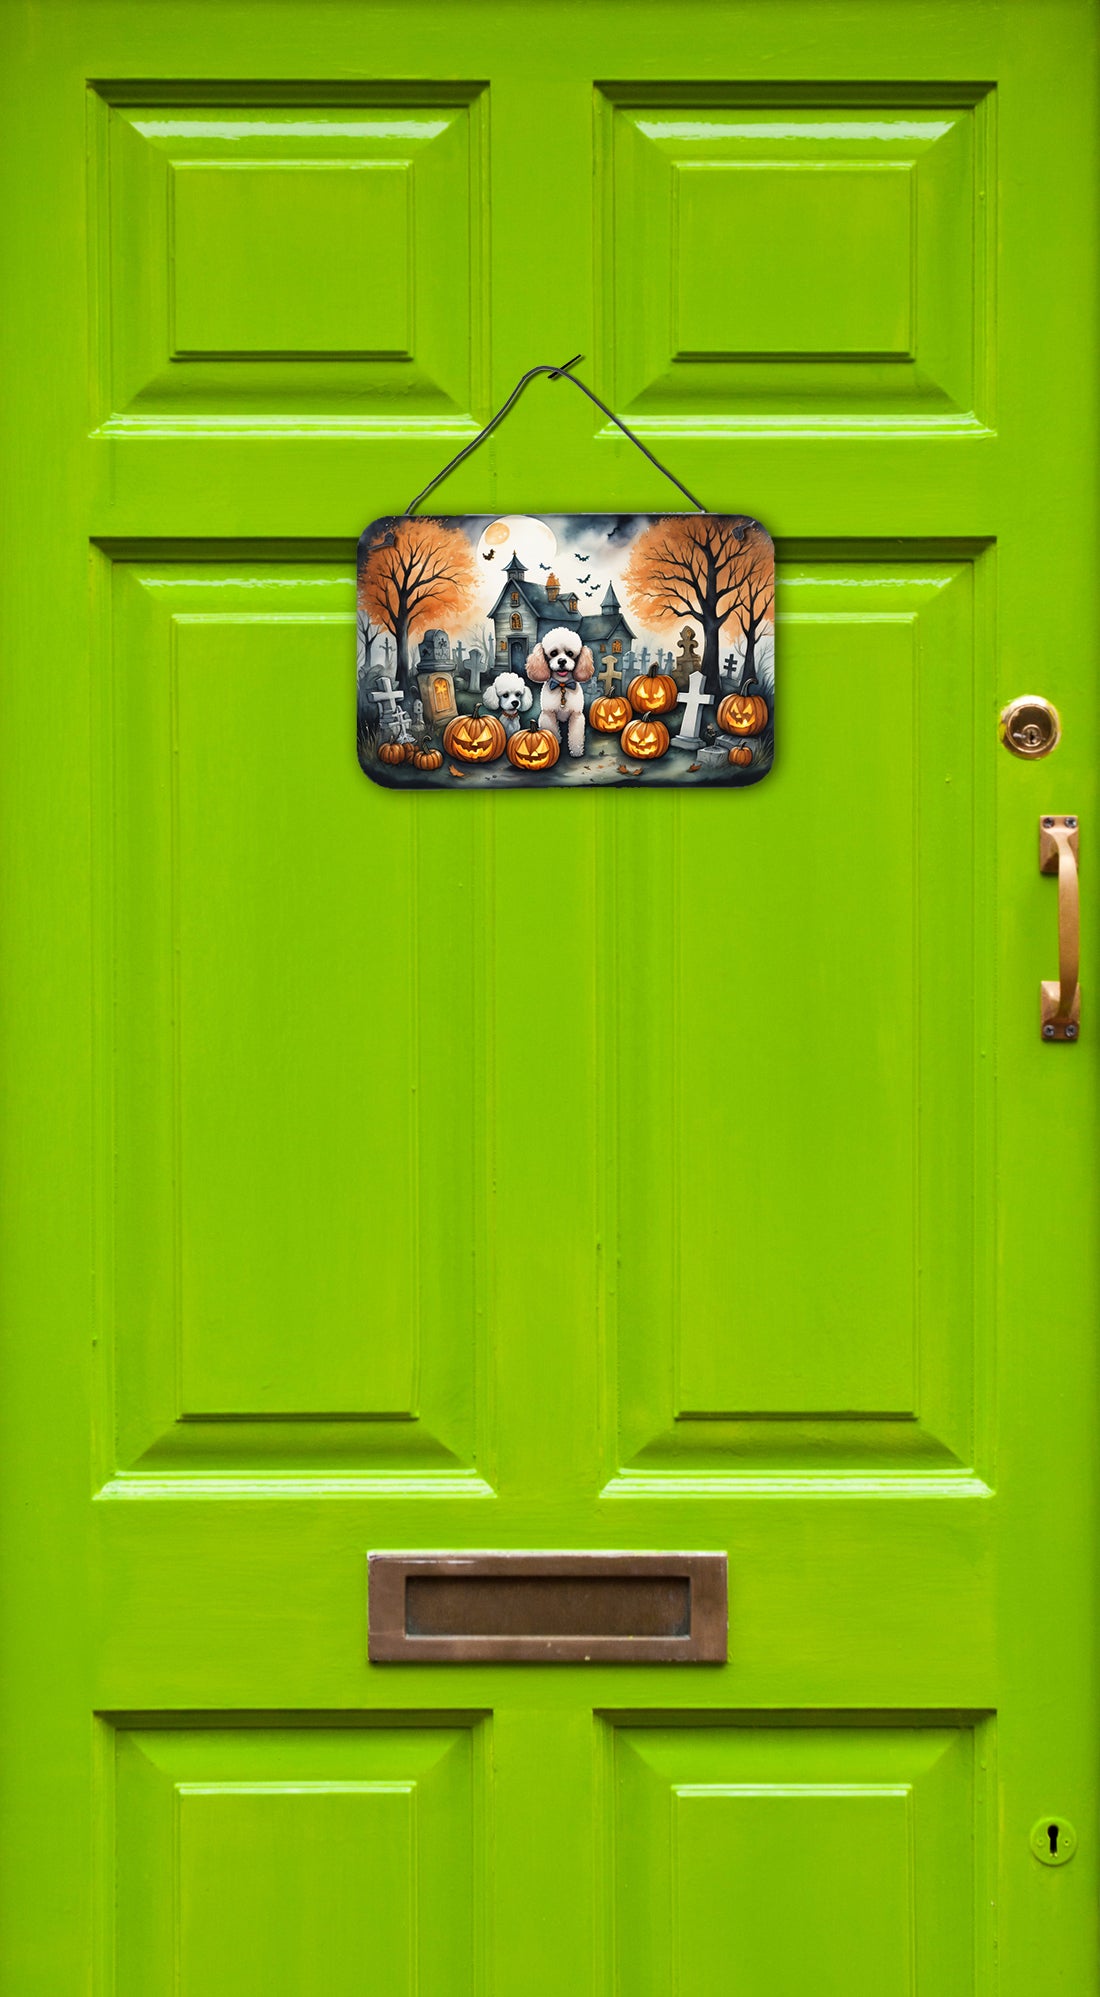 Poodle Spooky Halloween Wall or Door Hanging Prints